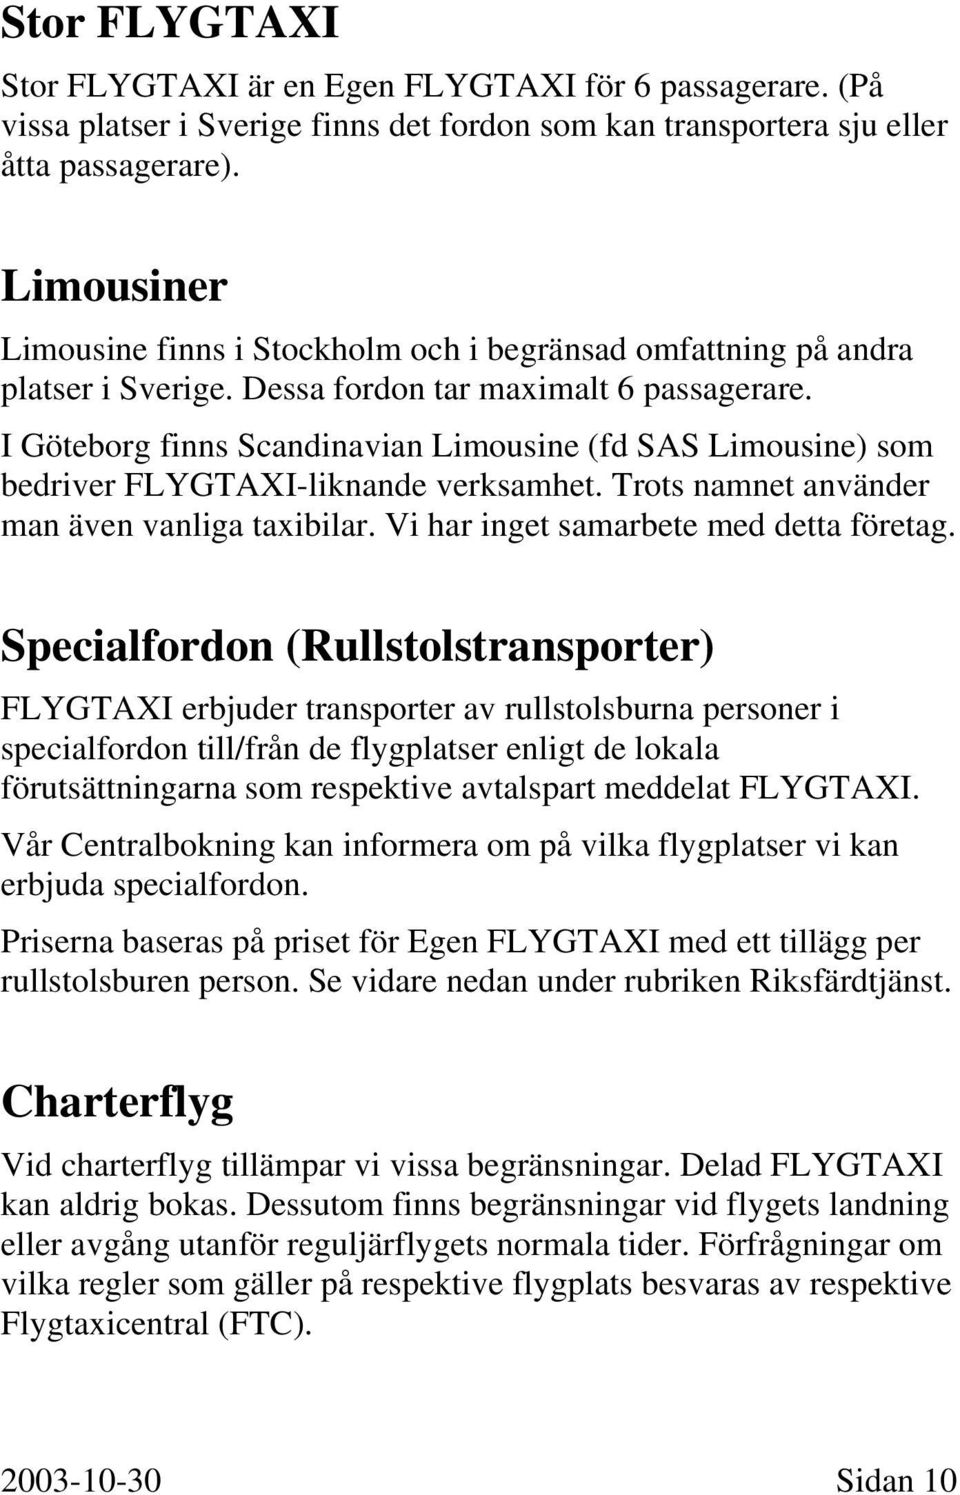 I Göteborg finns Scandinavian Limousine (fd SAS Limousine) som bedriver FLYGTAXI-liknande verksamhet. Trots namnet använder man även vanliga taxibilar. Vi har inget samarbete med detta företag.